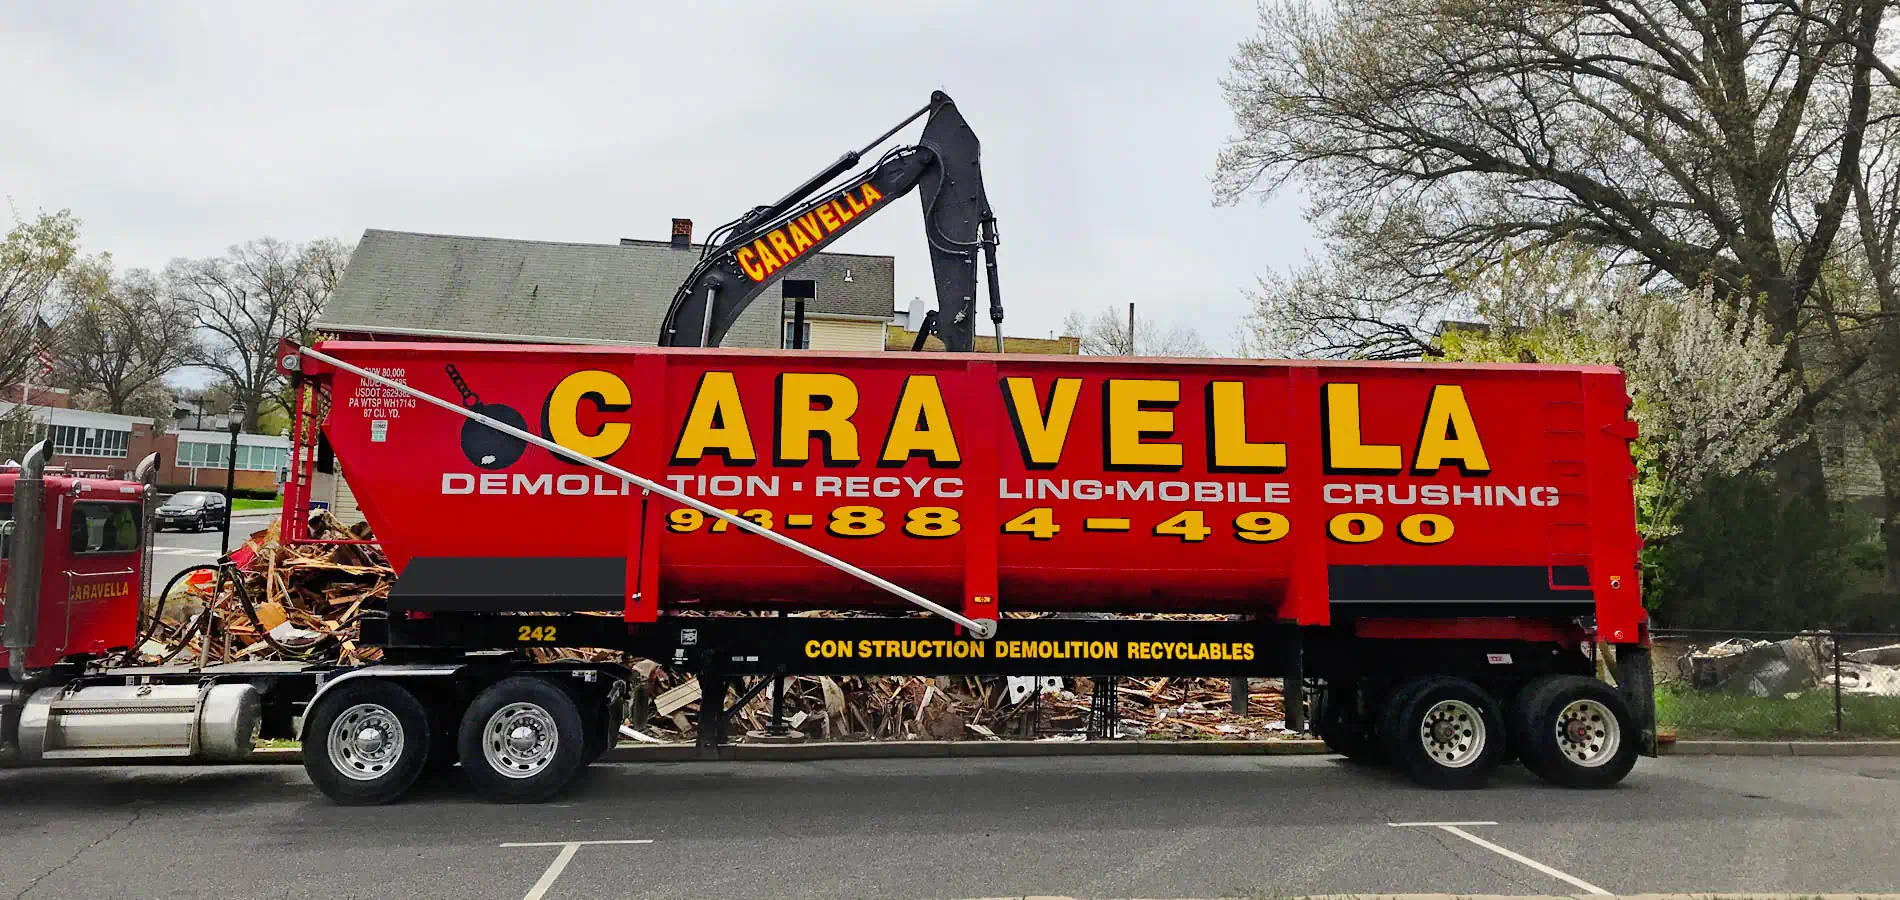 Demolition Services in Raritan, NJ 08869 | Caravella Demolition